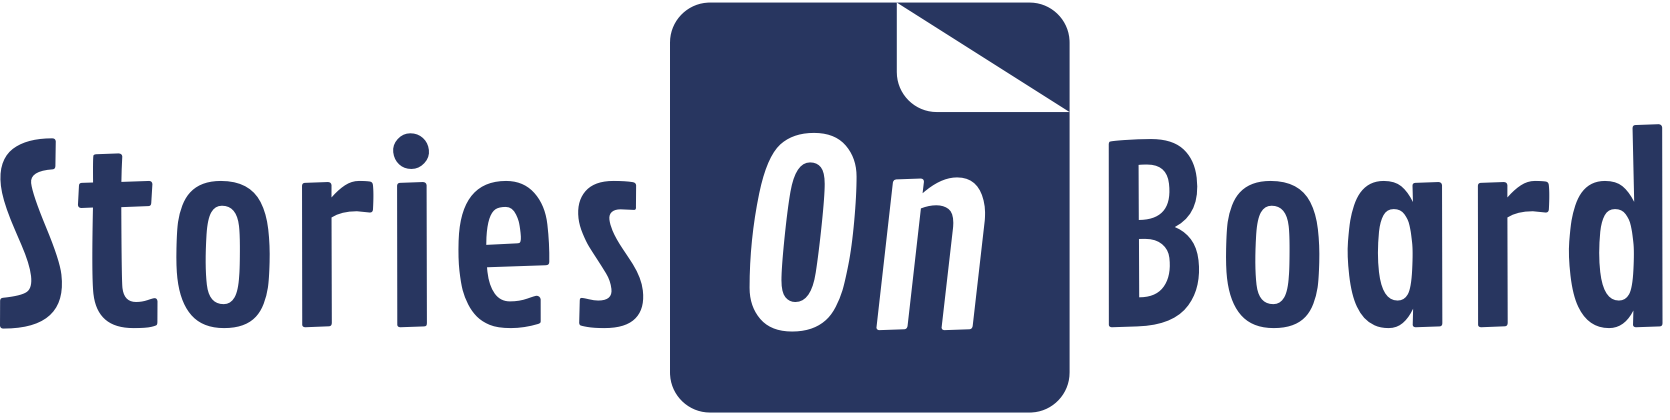 storiesonboard logo full